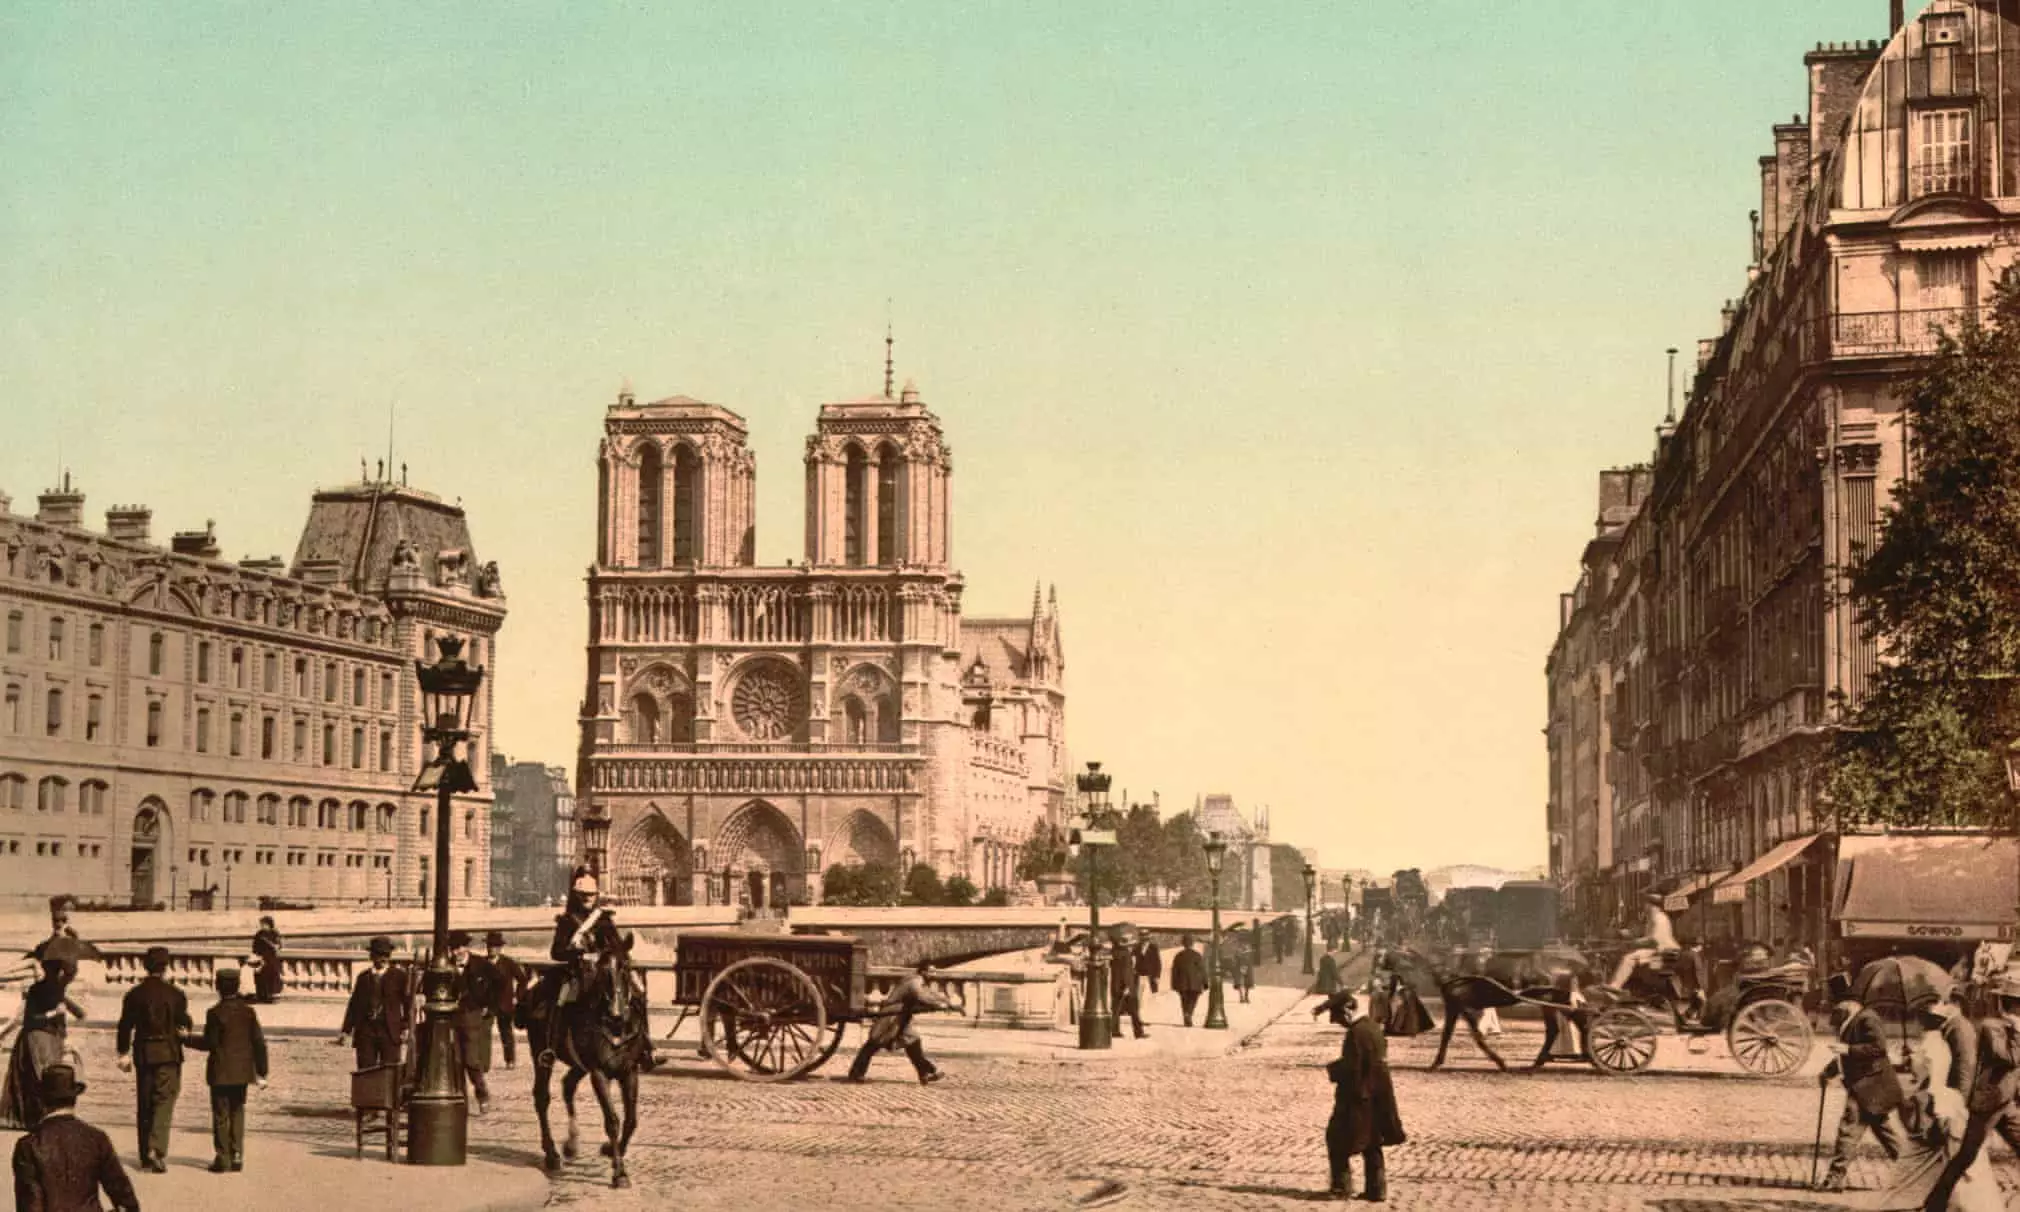 A coloured photograph of the Îsle de la Cité from about 1900.